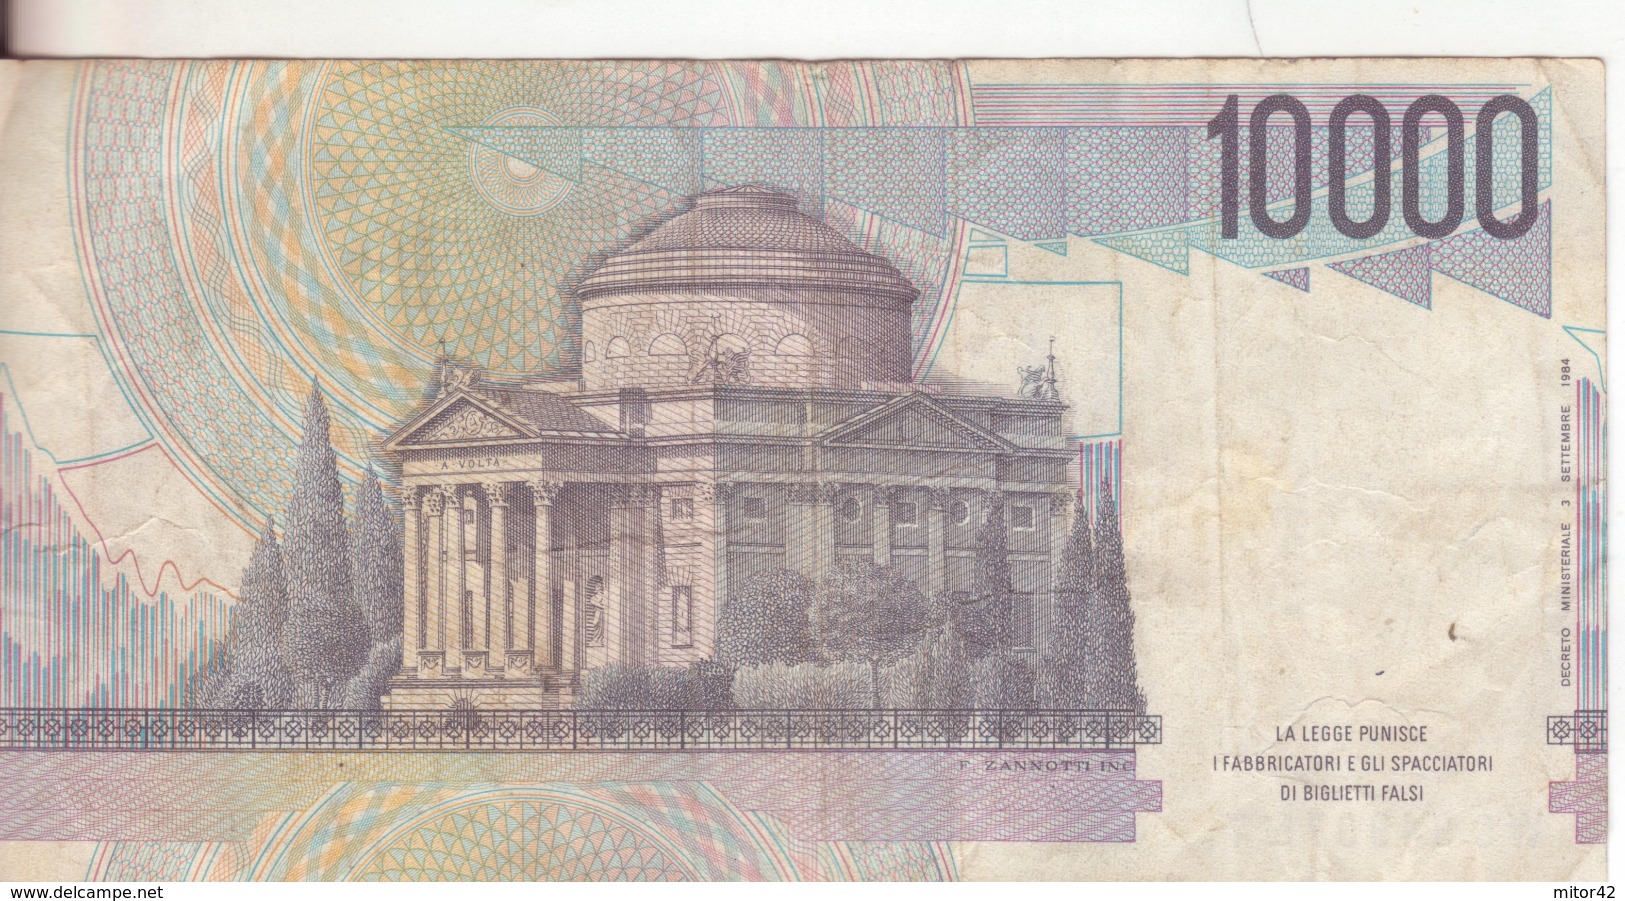 68*-Cartamoneta-Banconota  Italia Repubblica Da L10.000 Volta-Serie WC 949075 T-Condizione:Circolata - 10000 Lire